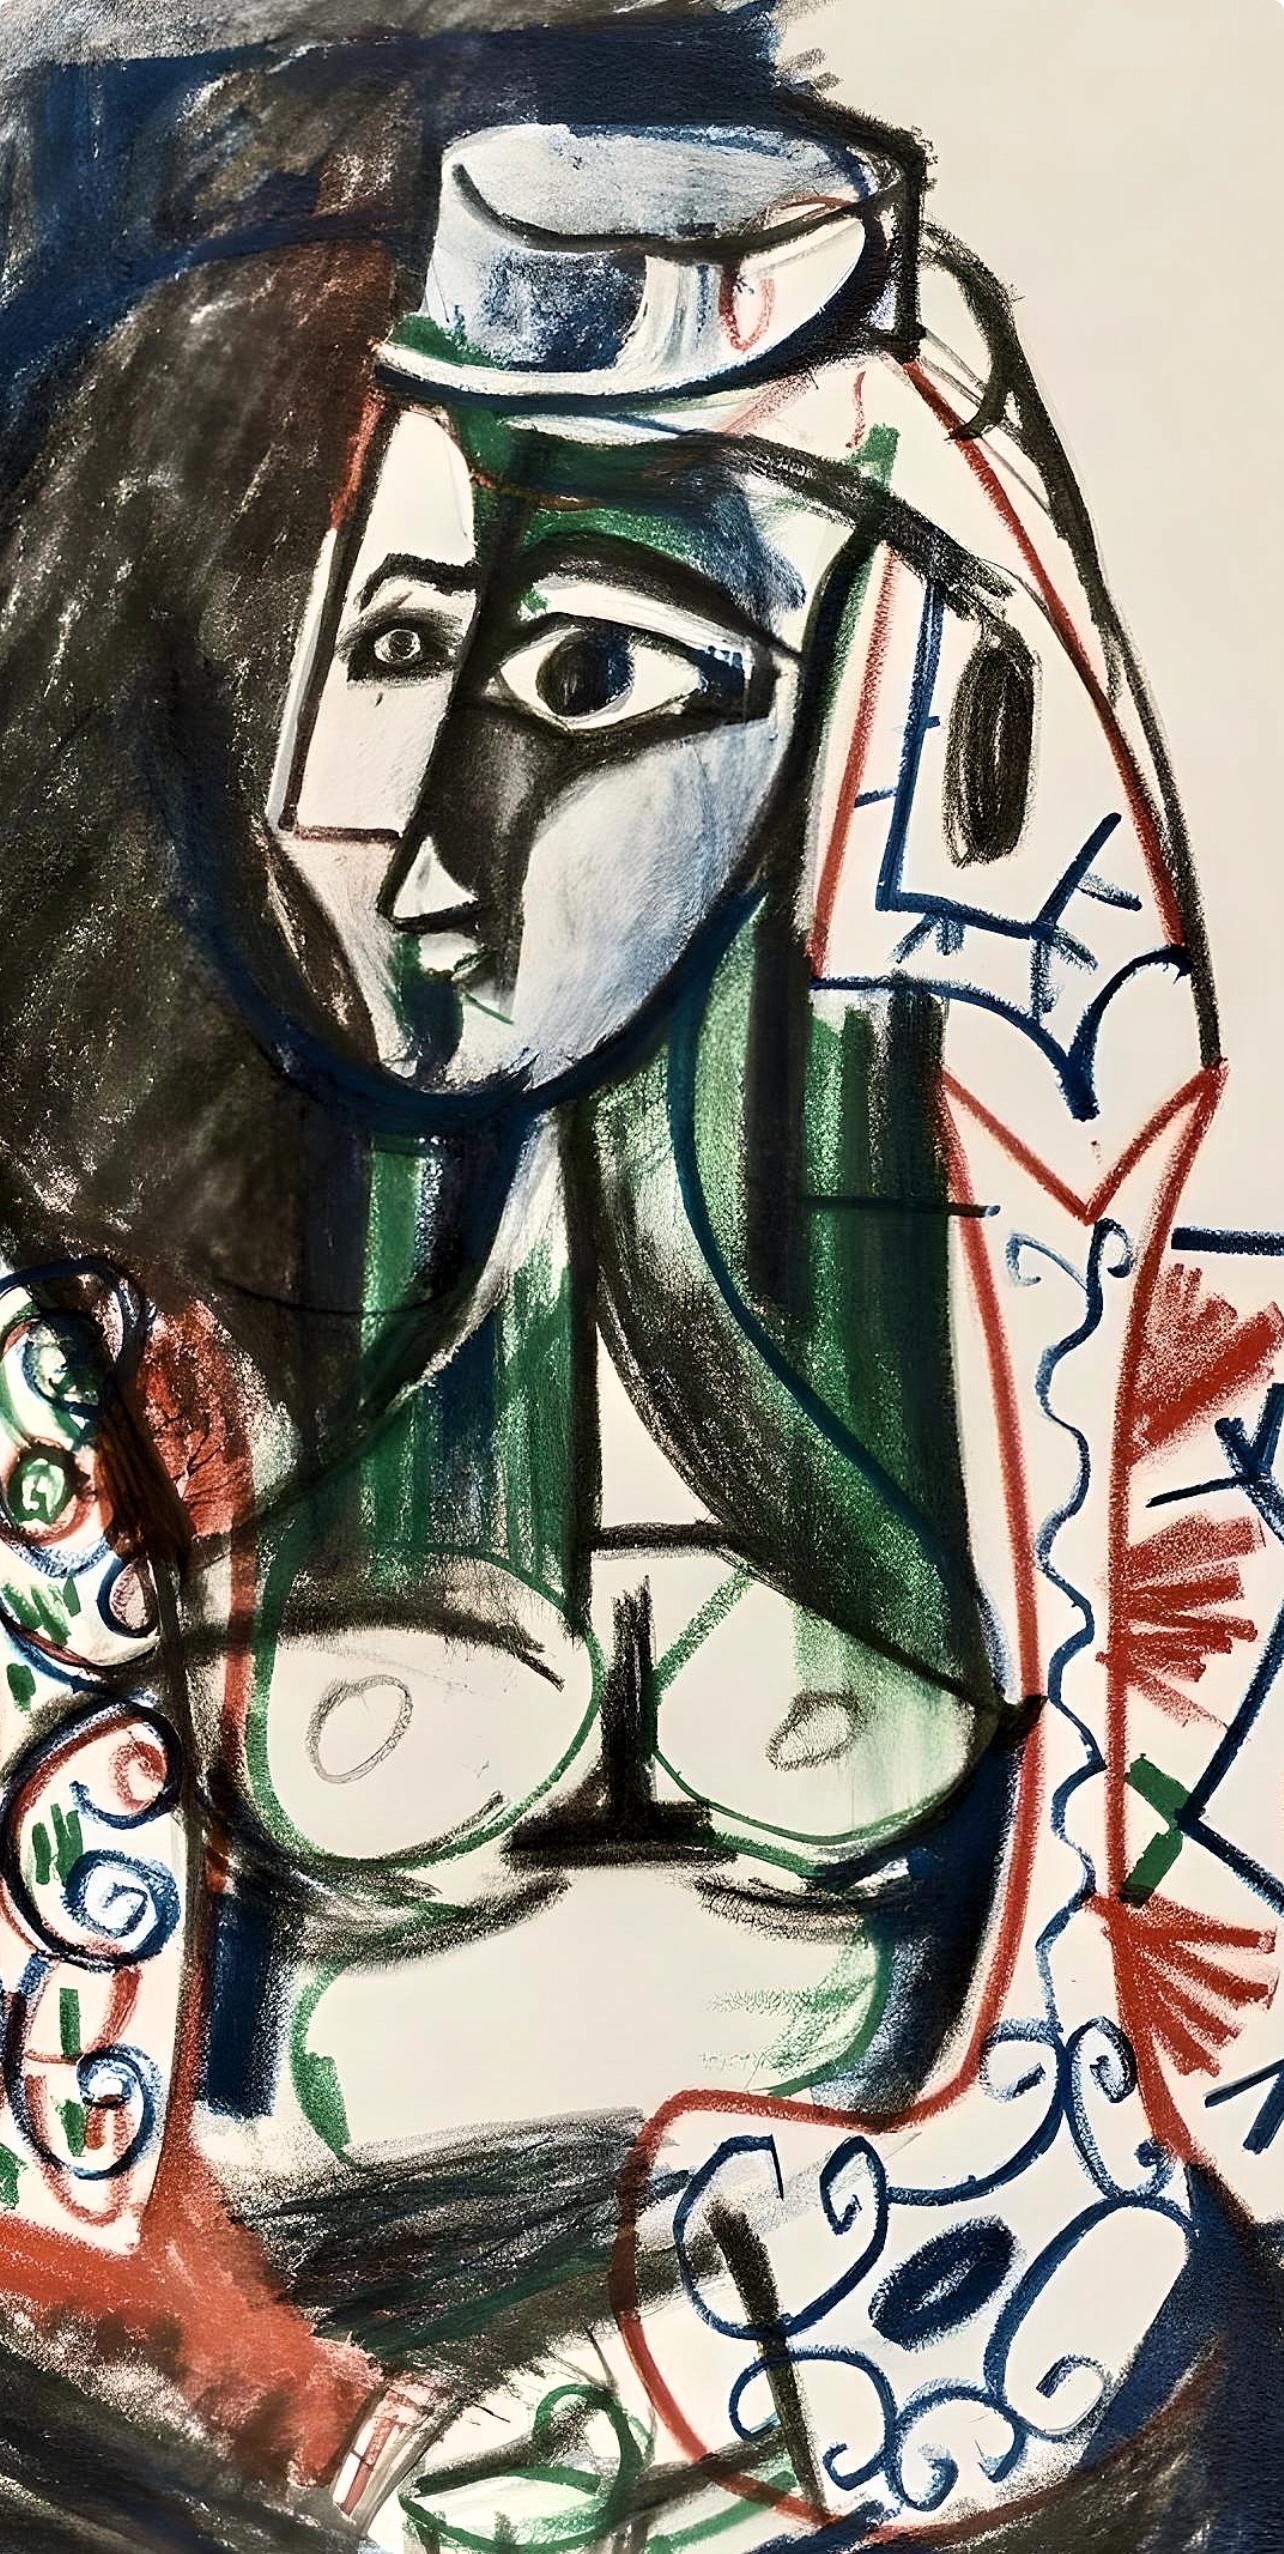 Picasso, 26.11.55, Carnet de la Californie (Cramer 101), après - Print de Pablo Picasso